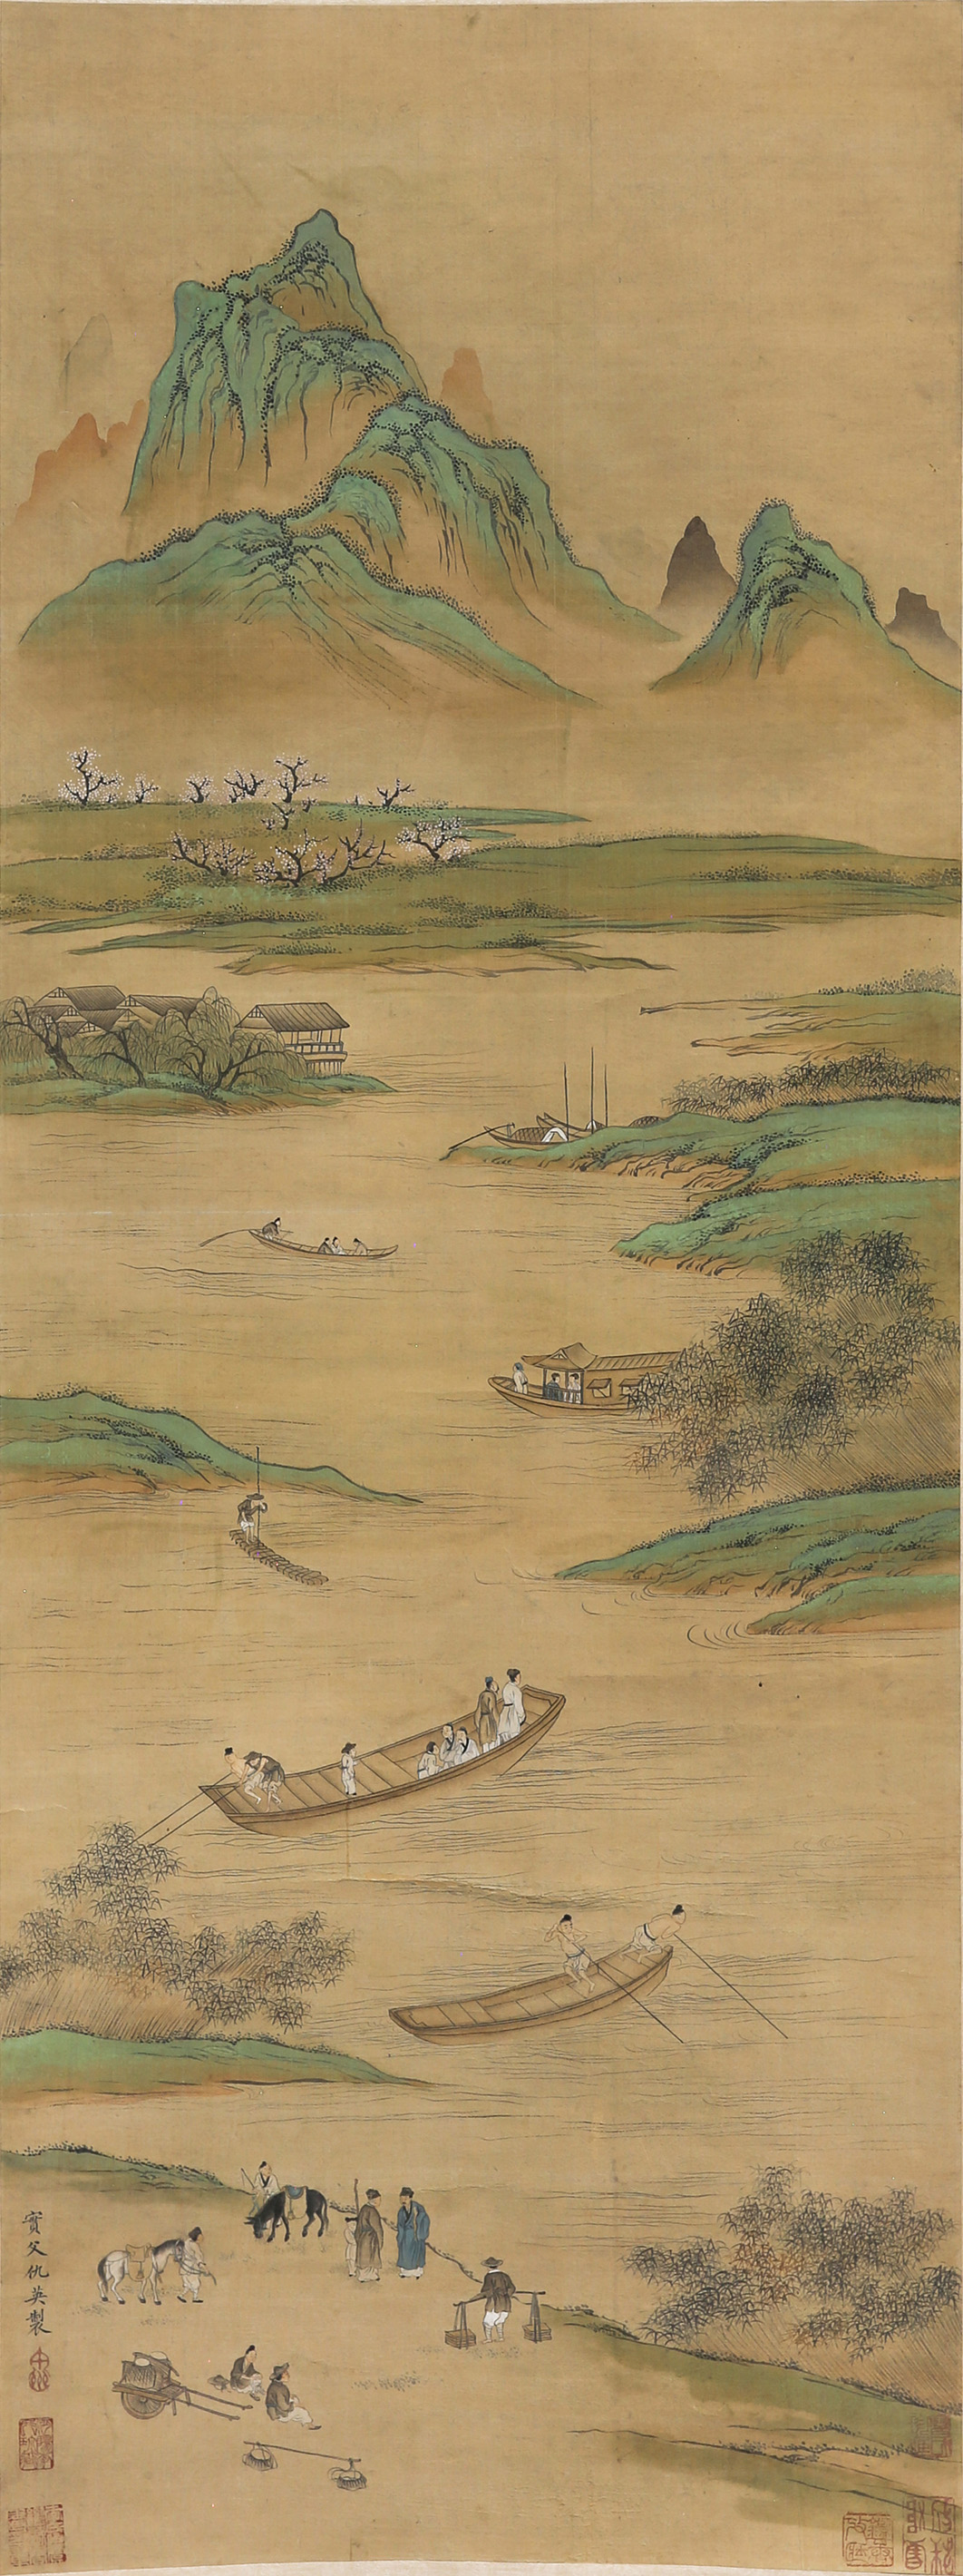 MANNER OF QIU YING (1494?-1552) - GATHERING